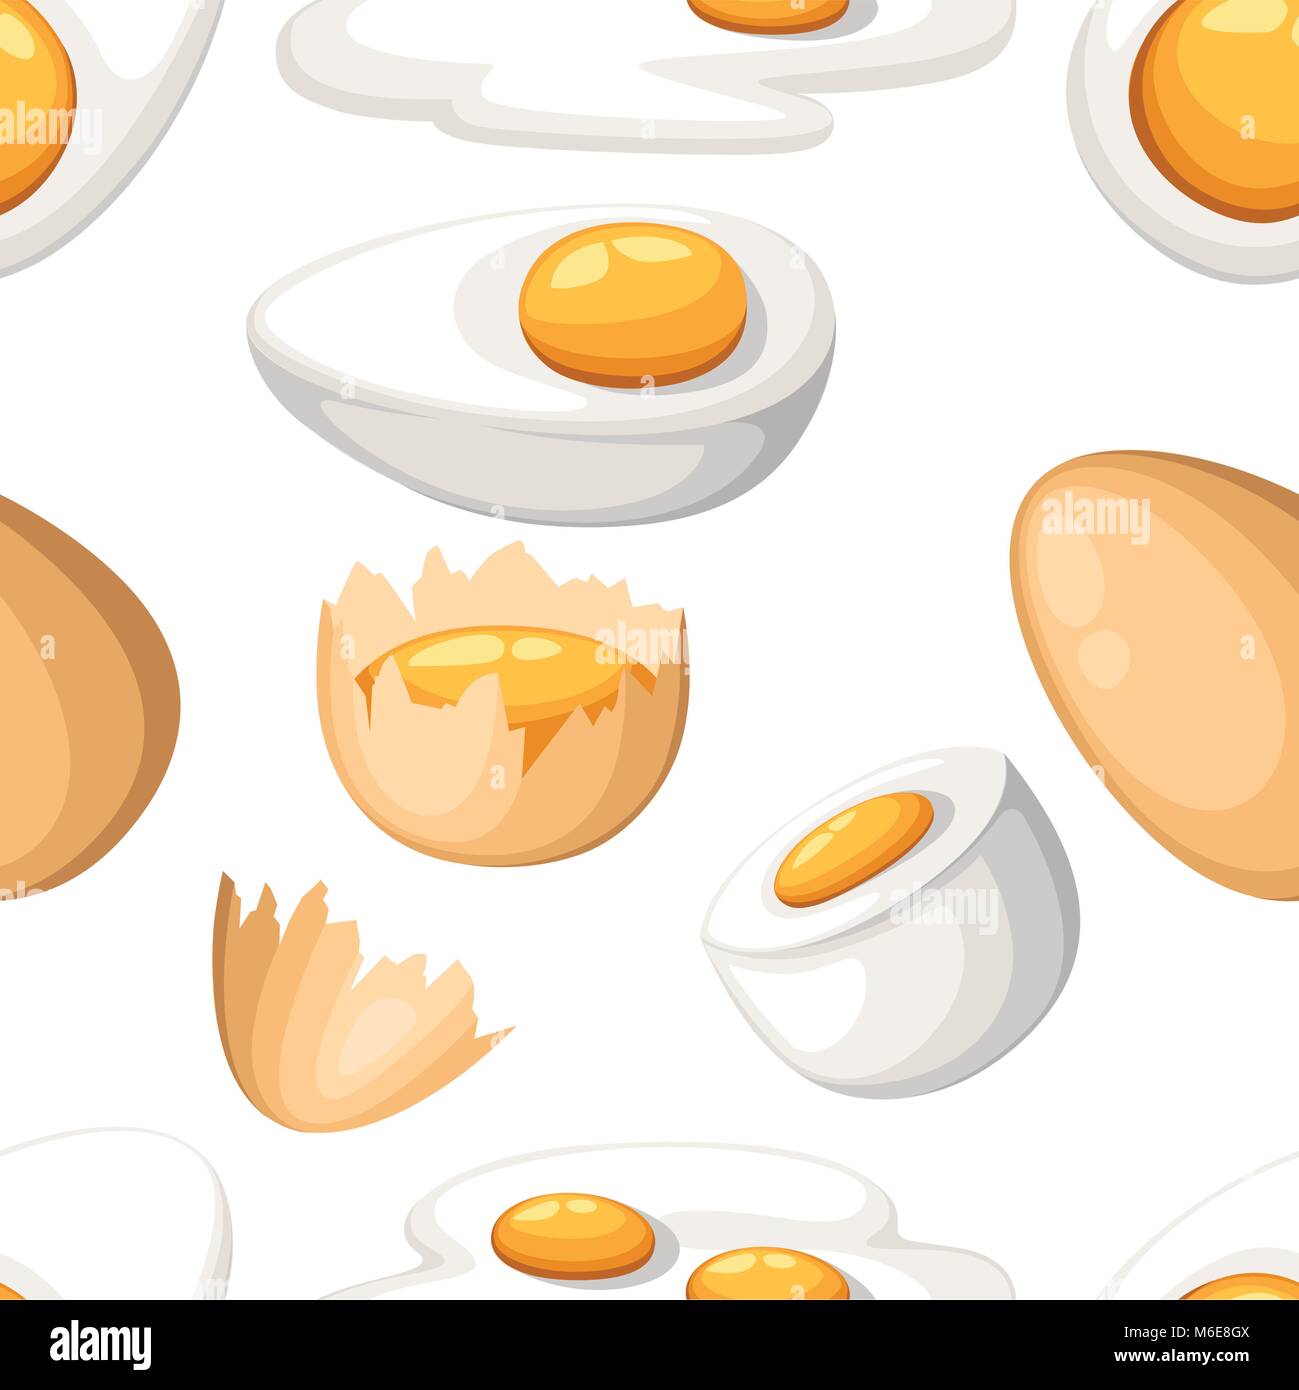 Profil de transparente les oeufs de poule. Rôti, bouilli, cru, en tranches, d'œufs fêlés vector set. Isolé sur fond blanc Illustration de Vecteur